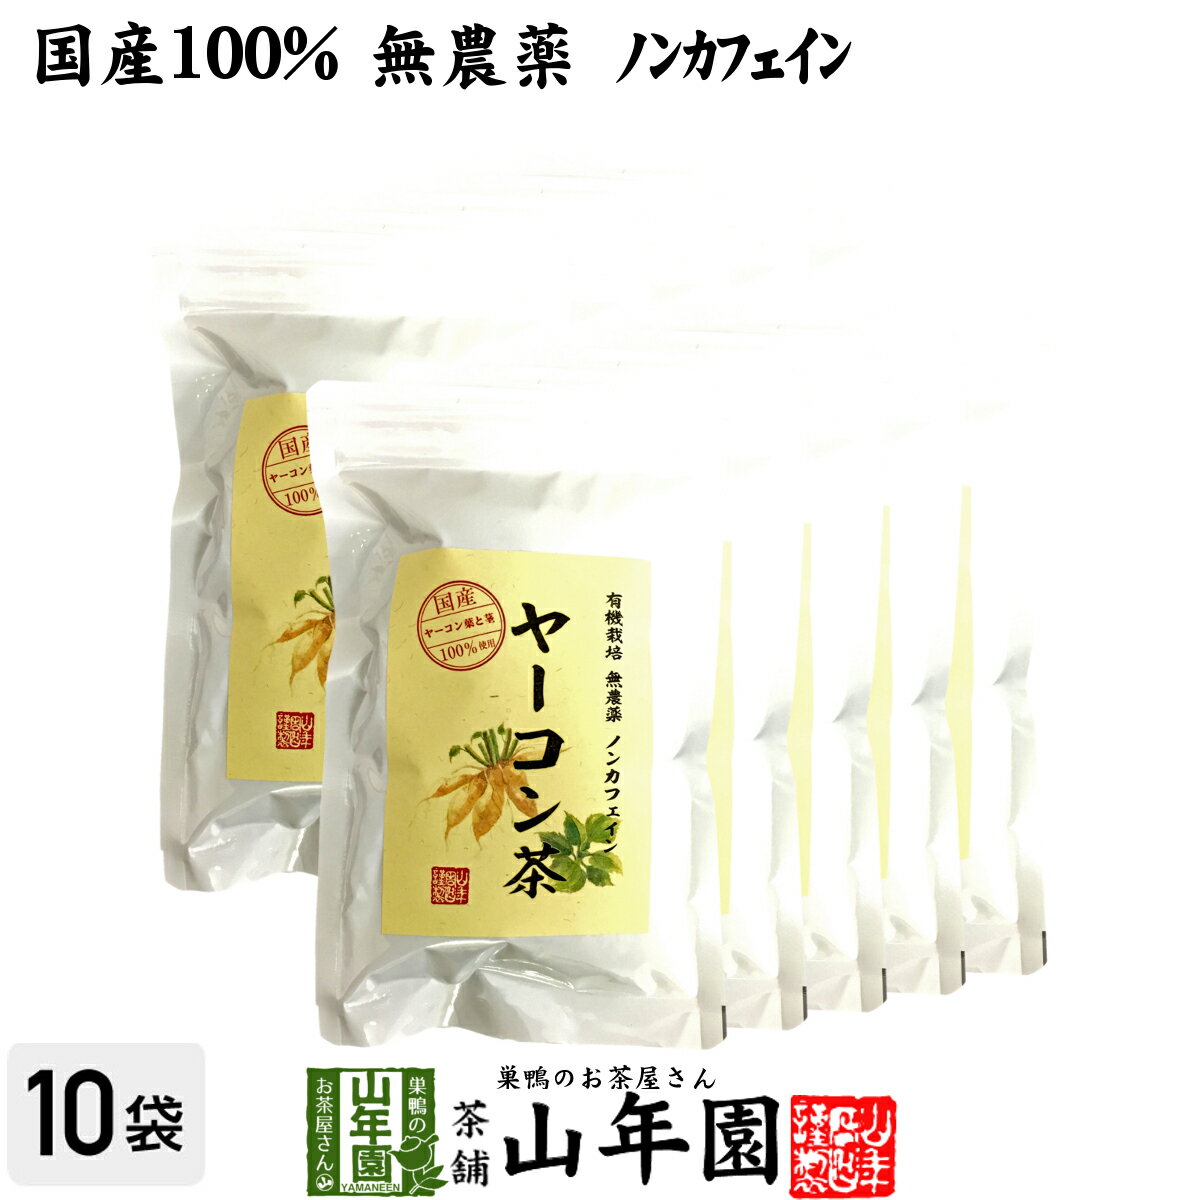 【国産 無農薬 100%】ヤーコン茶 2g×10パック×10